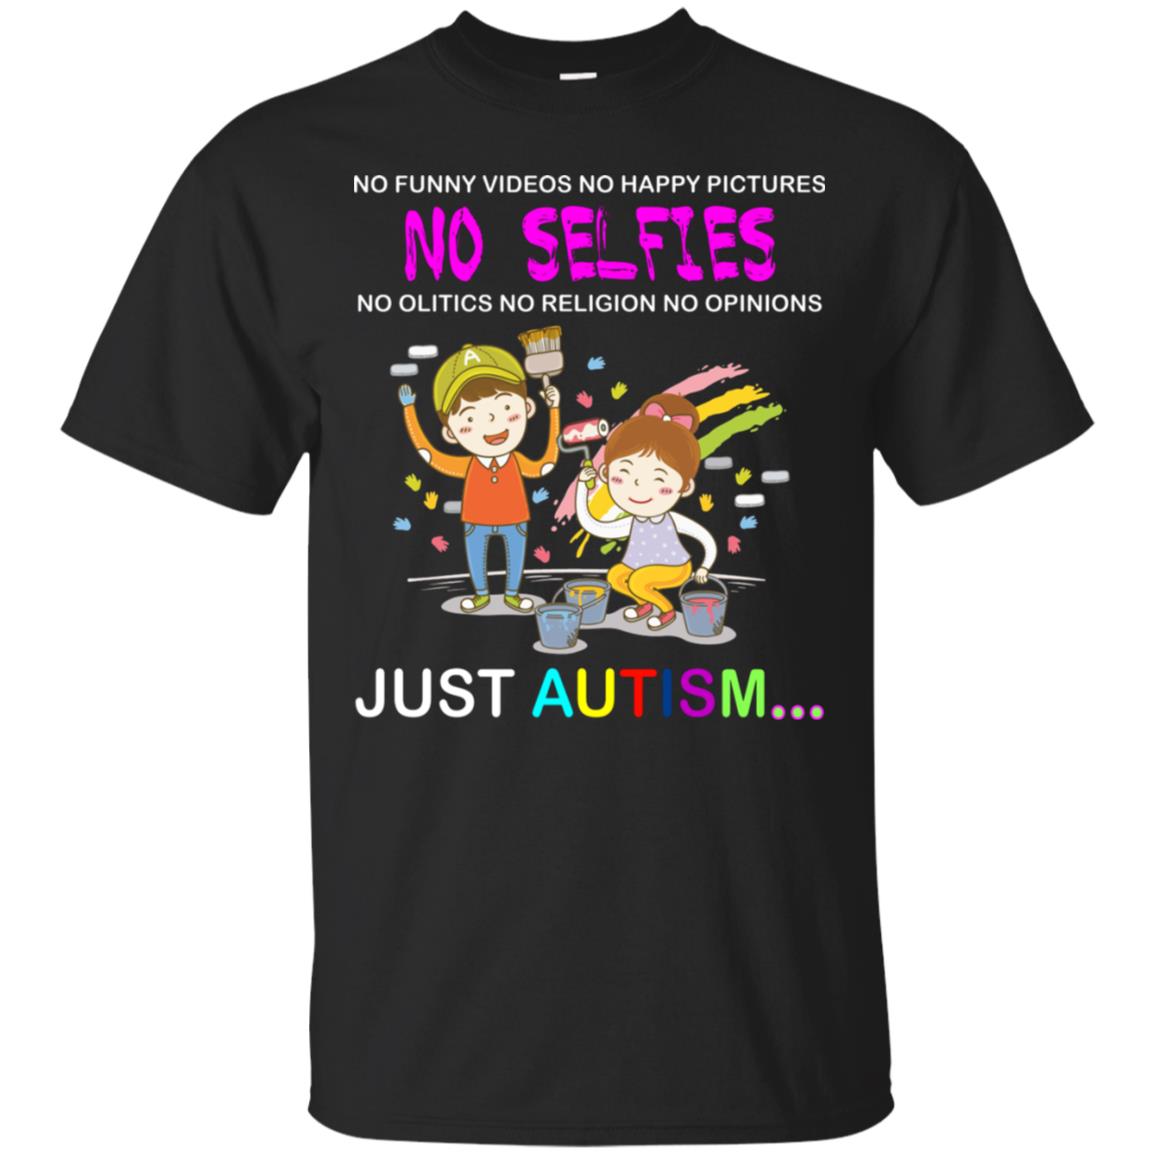 No Funny Video No Happy Pictures No Olitics No Religion No Opinions Just Autism ShirtG200 Gildan Ultra Cotton T-Shirt